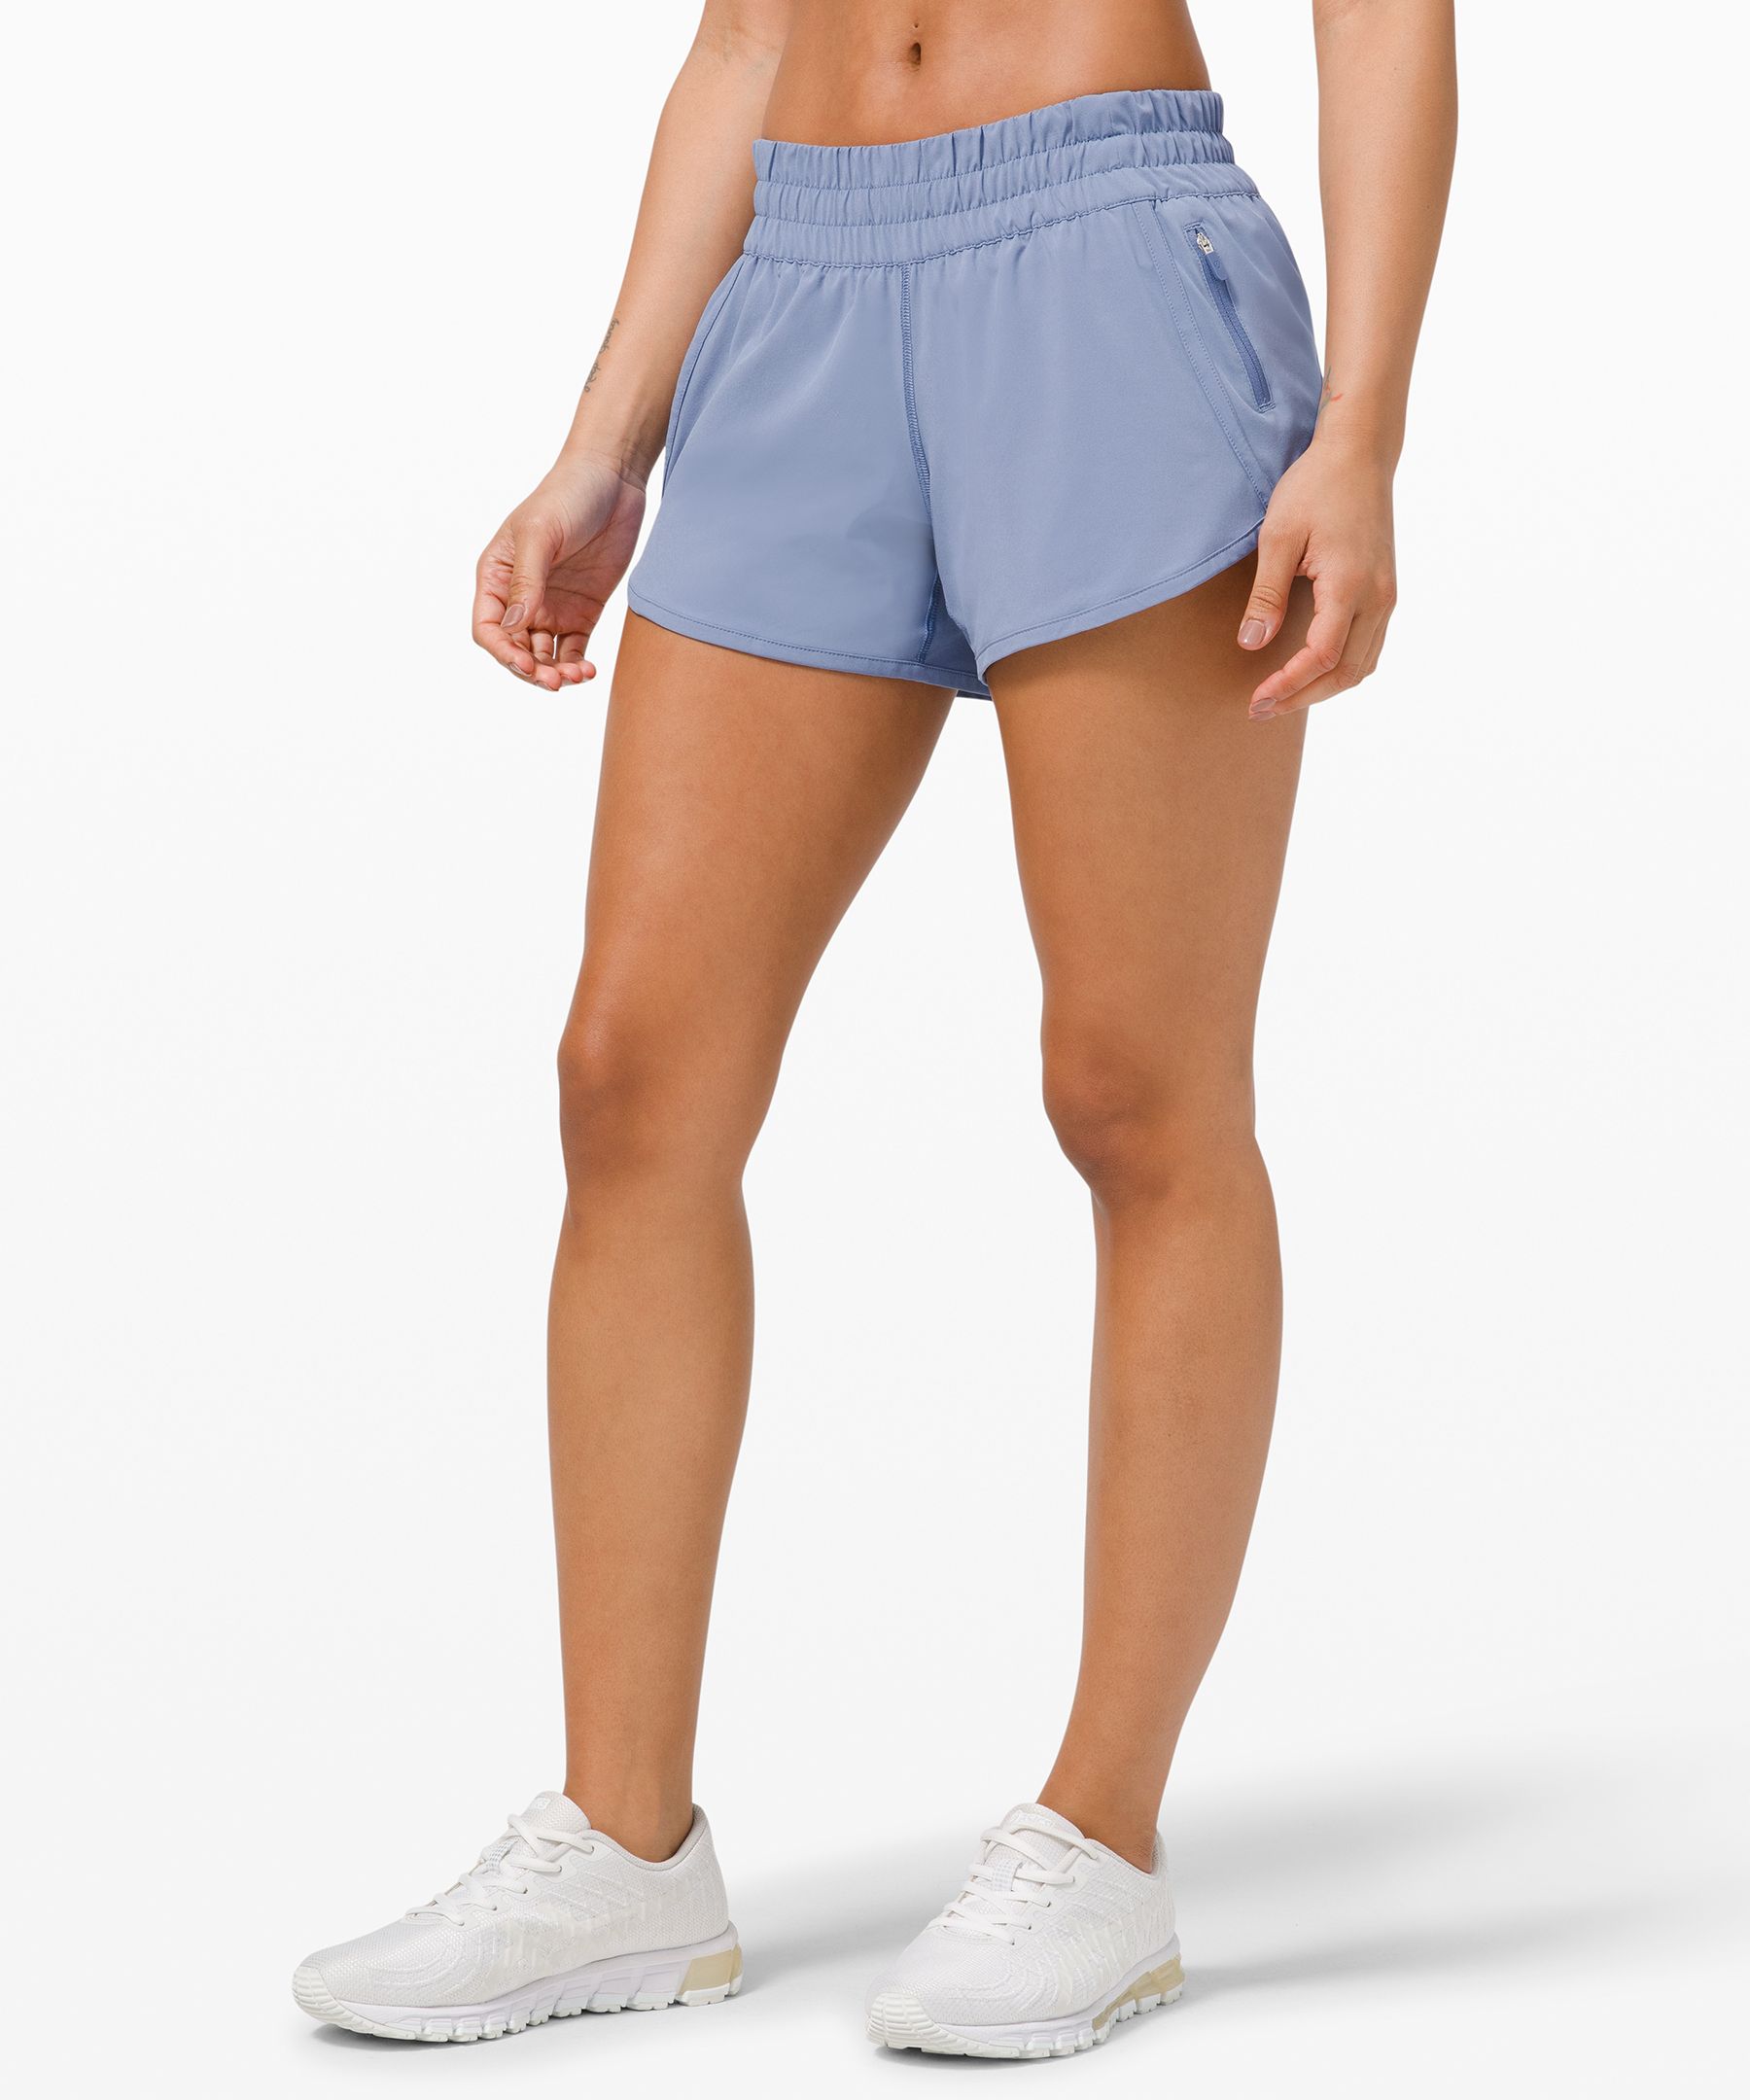 lululemon shorts size 2